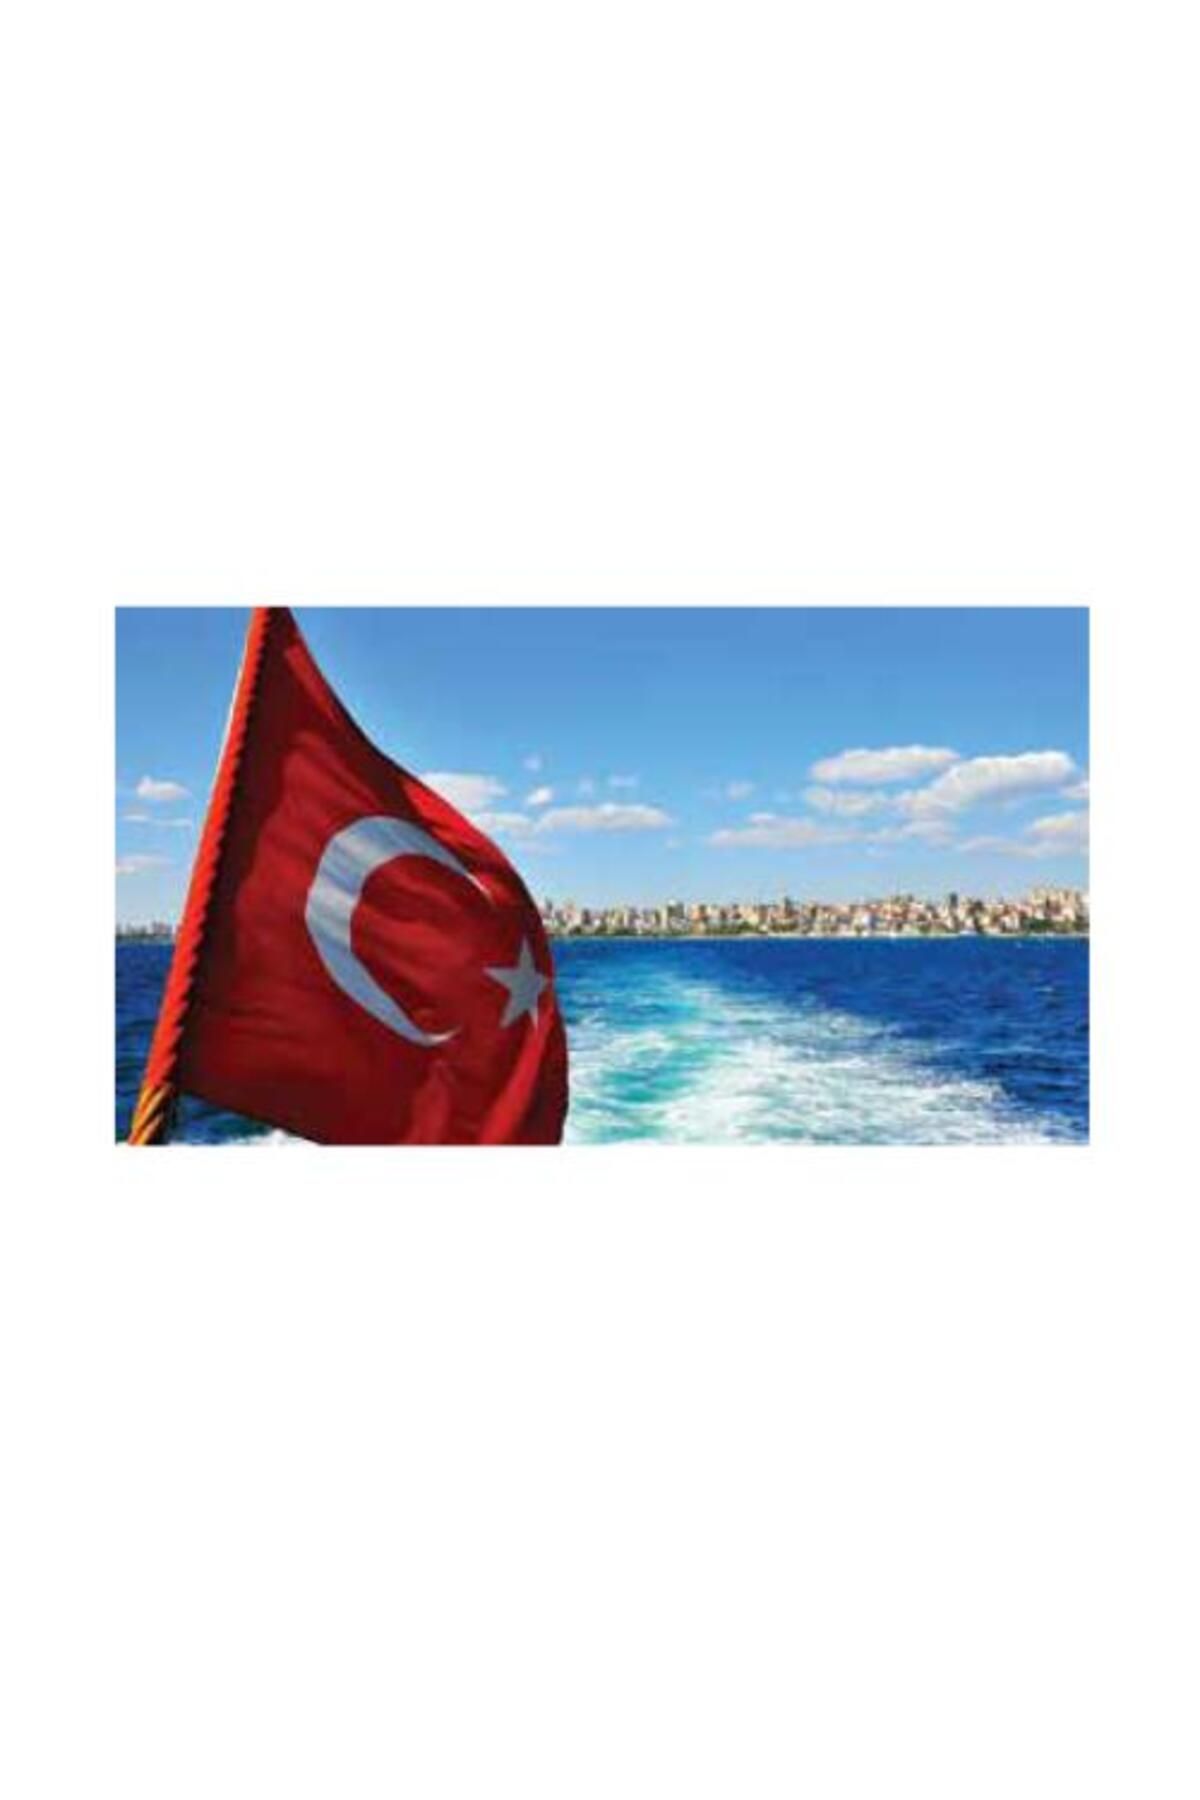 KALE Türk Bayrağı 150x225cm